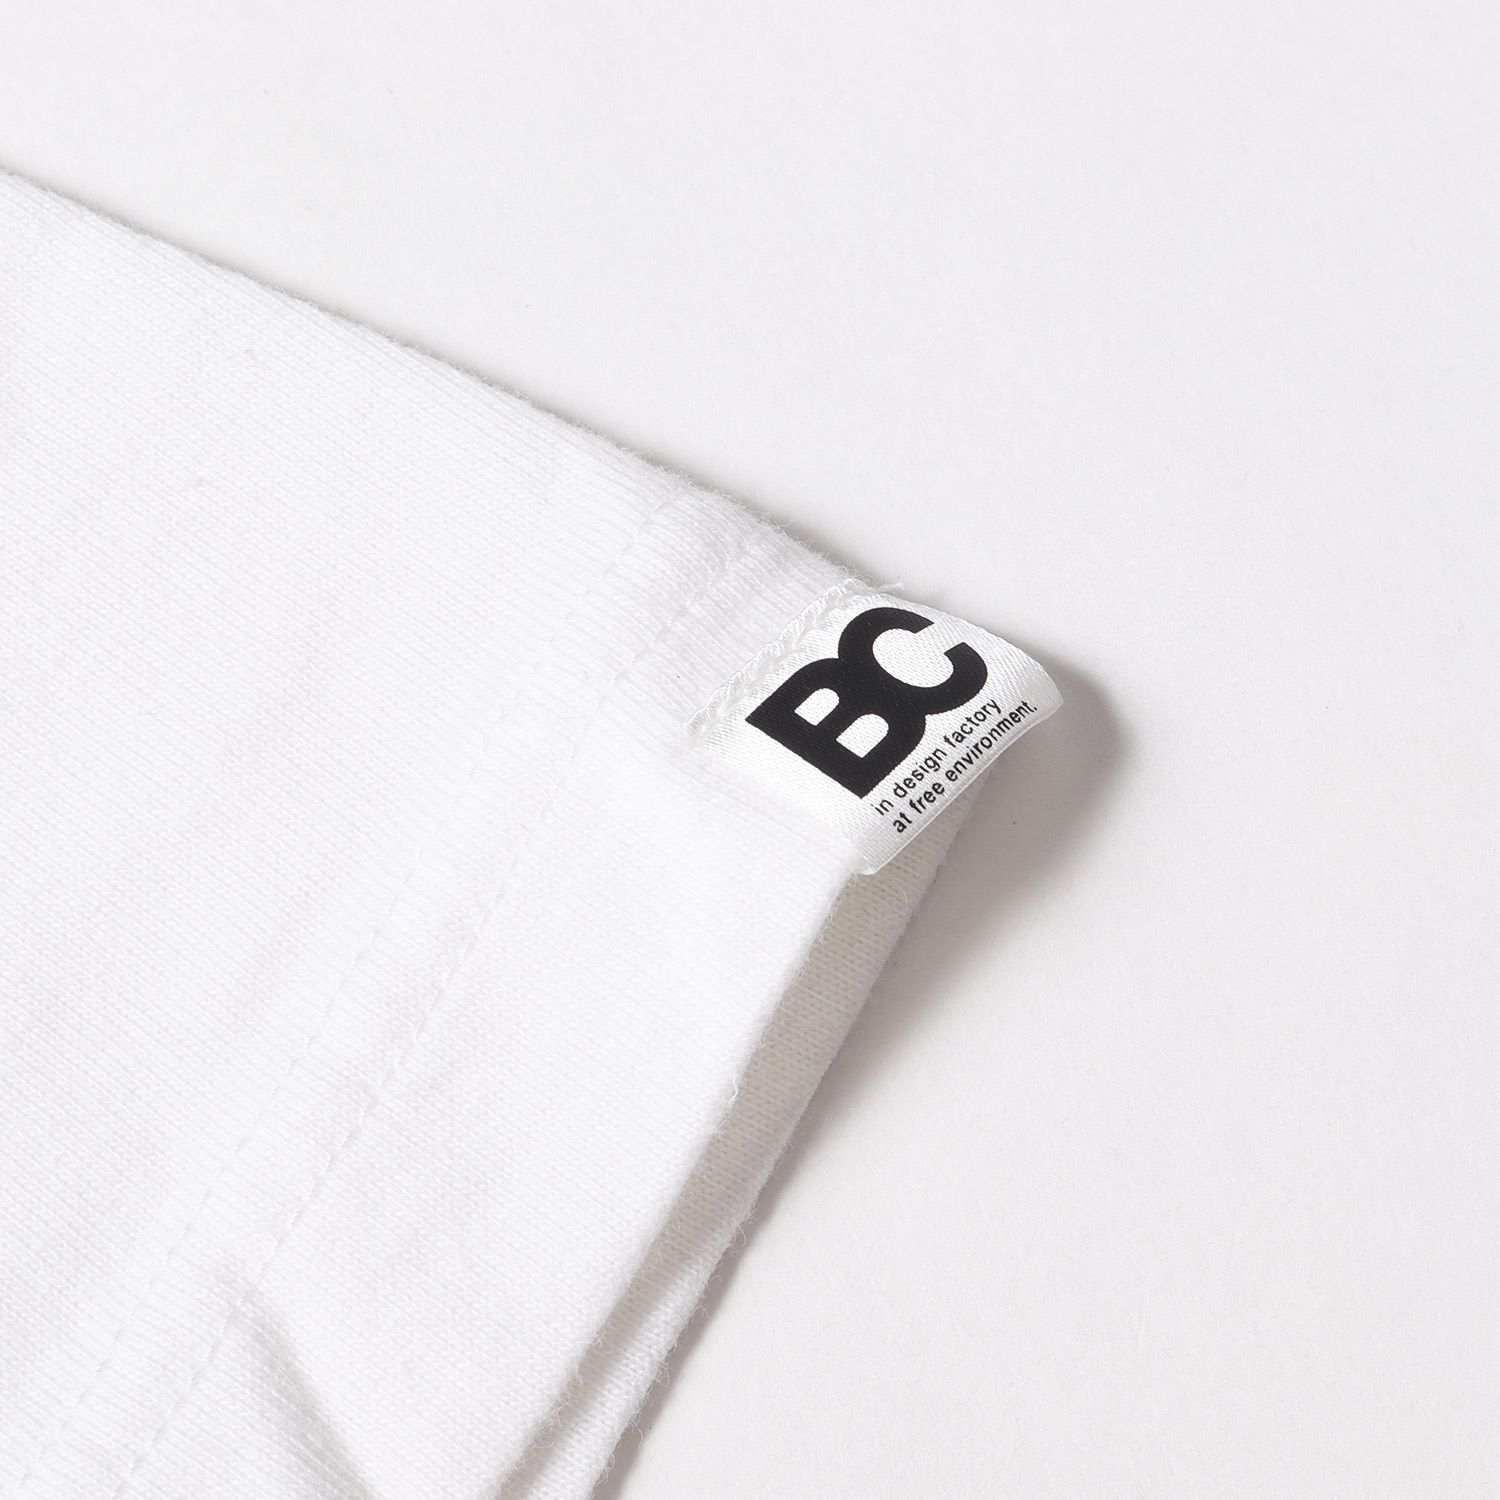 GOOD ENOUGH グッドイナフ Tシャツ サイズ:4 BASECONTROL ブランドロゴ プリント クルーネック 半袖 Tシャツ ホワイト 白  トップス カットソー コラボ ストリート カジュアル アウトドア ブランド